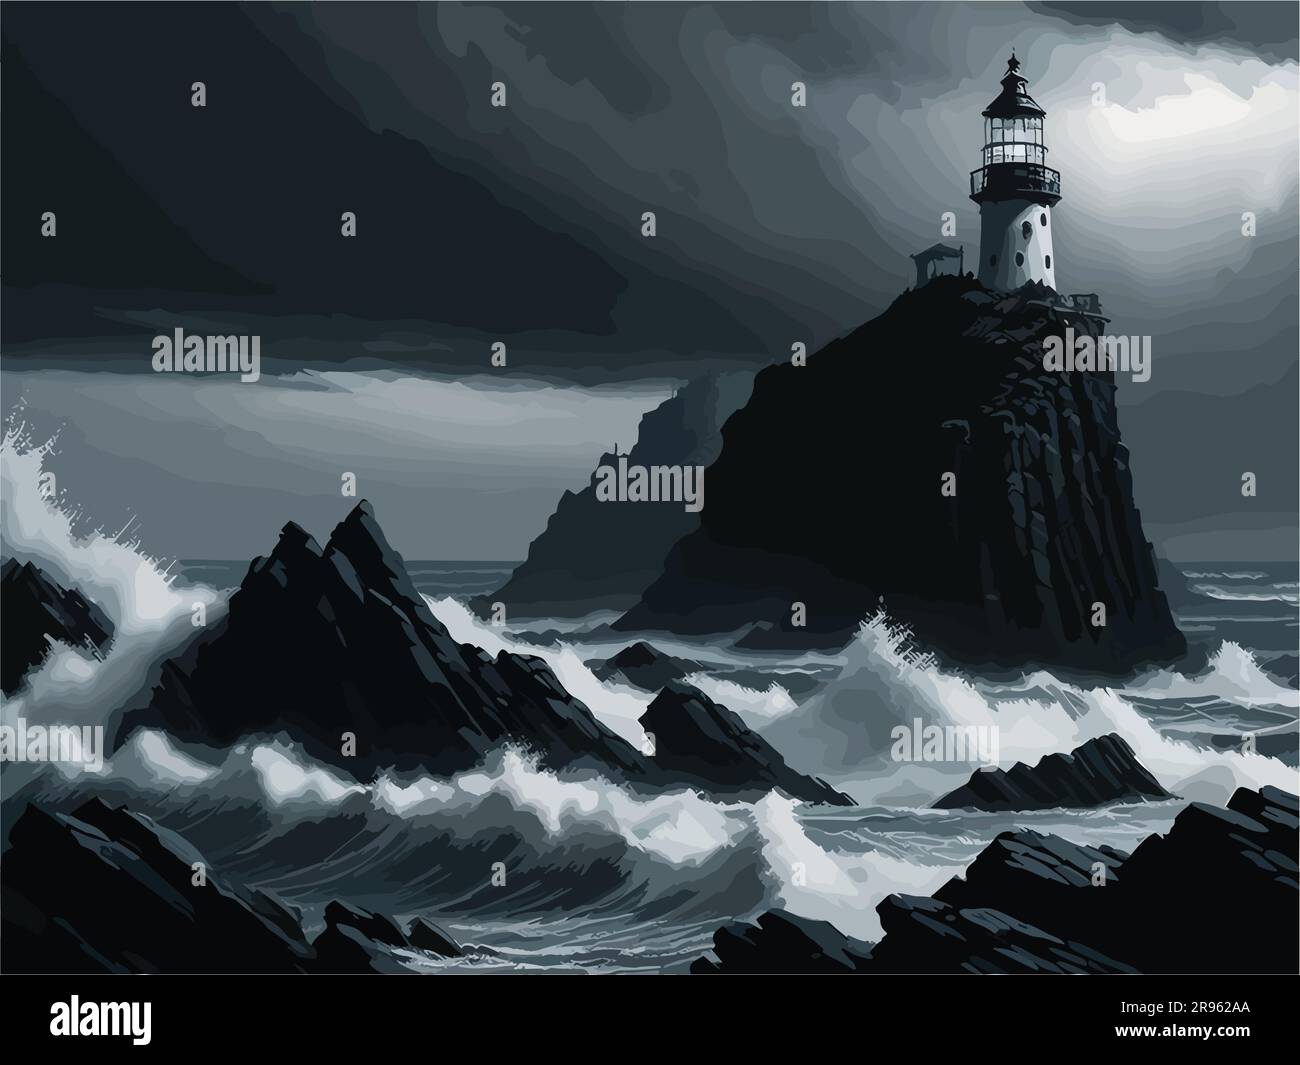 image de style peinture à l'huile d'une plage tranquille au crépuscule, avec un phare seul debout contre le ciel sombre. Capturez la chaleur et l'or Illustration de Vecteur